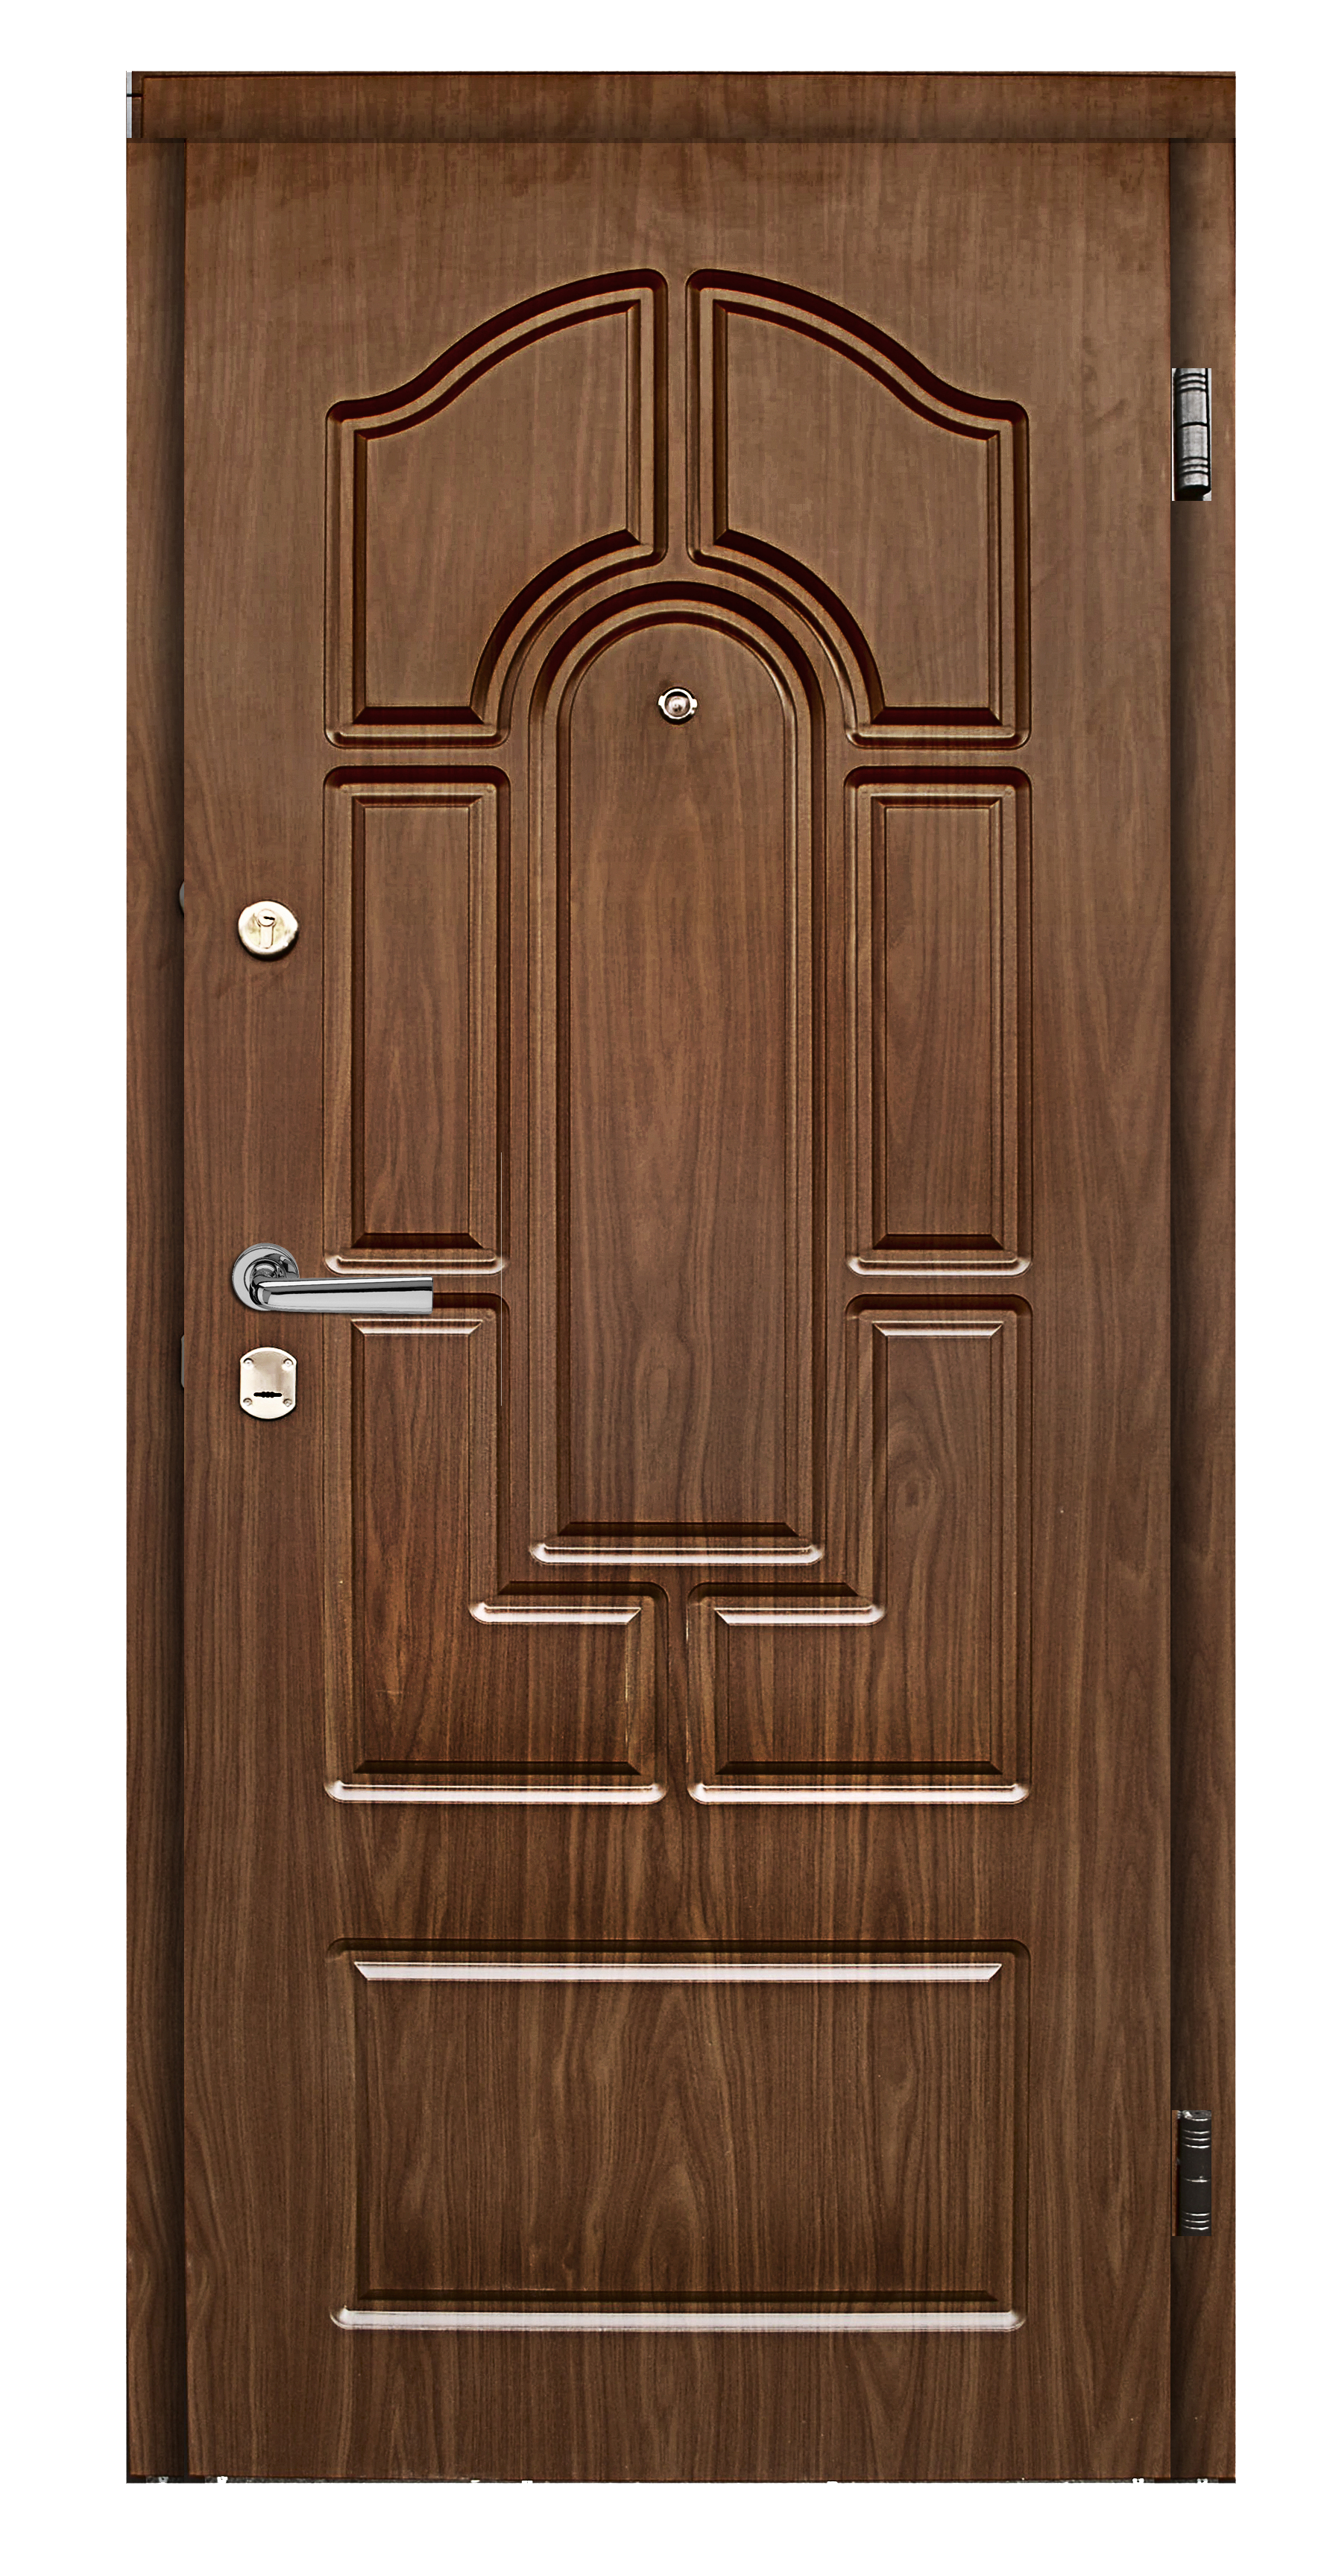 A brown wooden door.